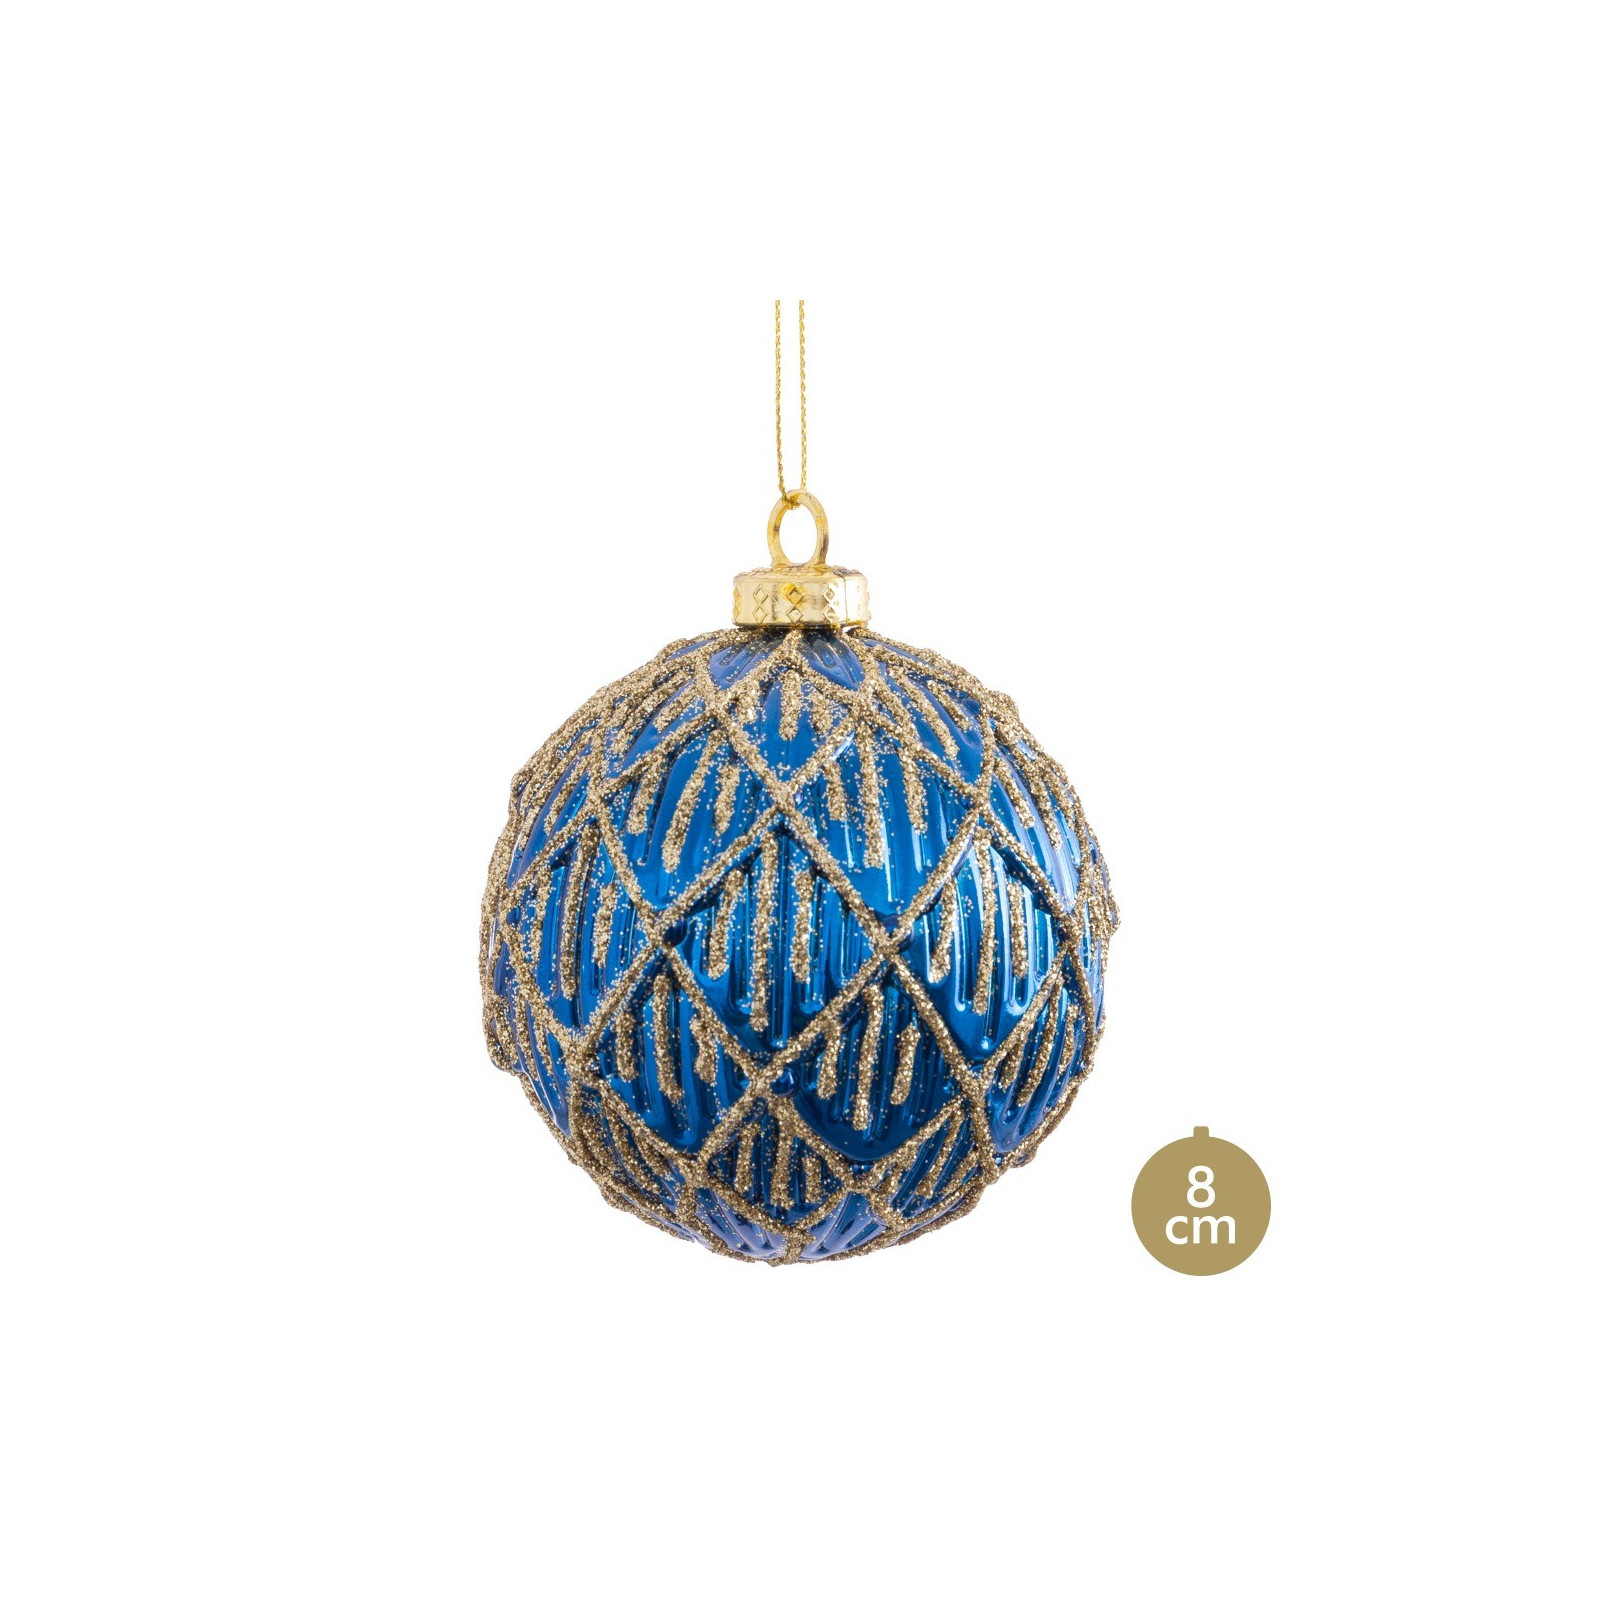 Bola decorada azul 8 x 8 x 8 cm